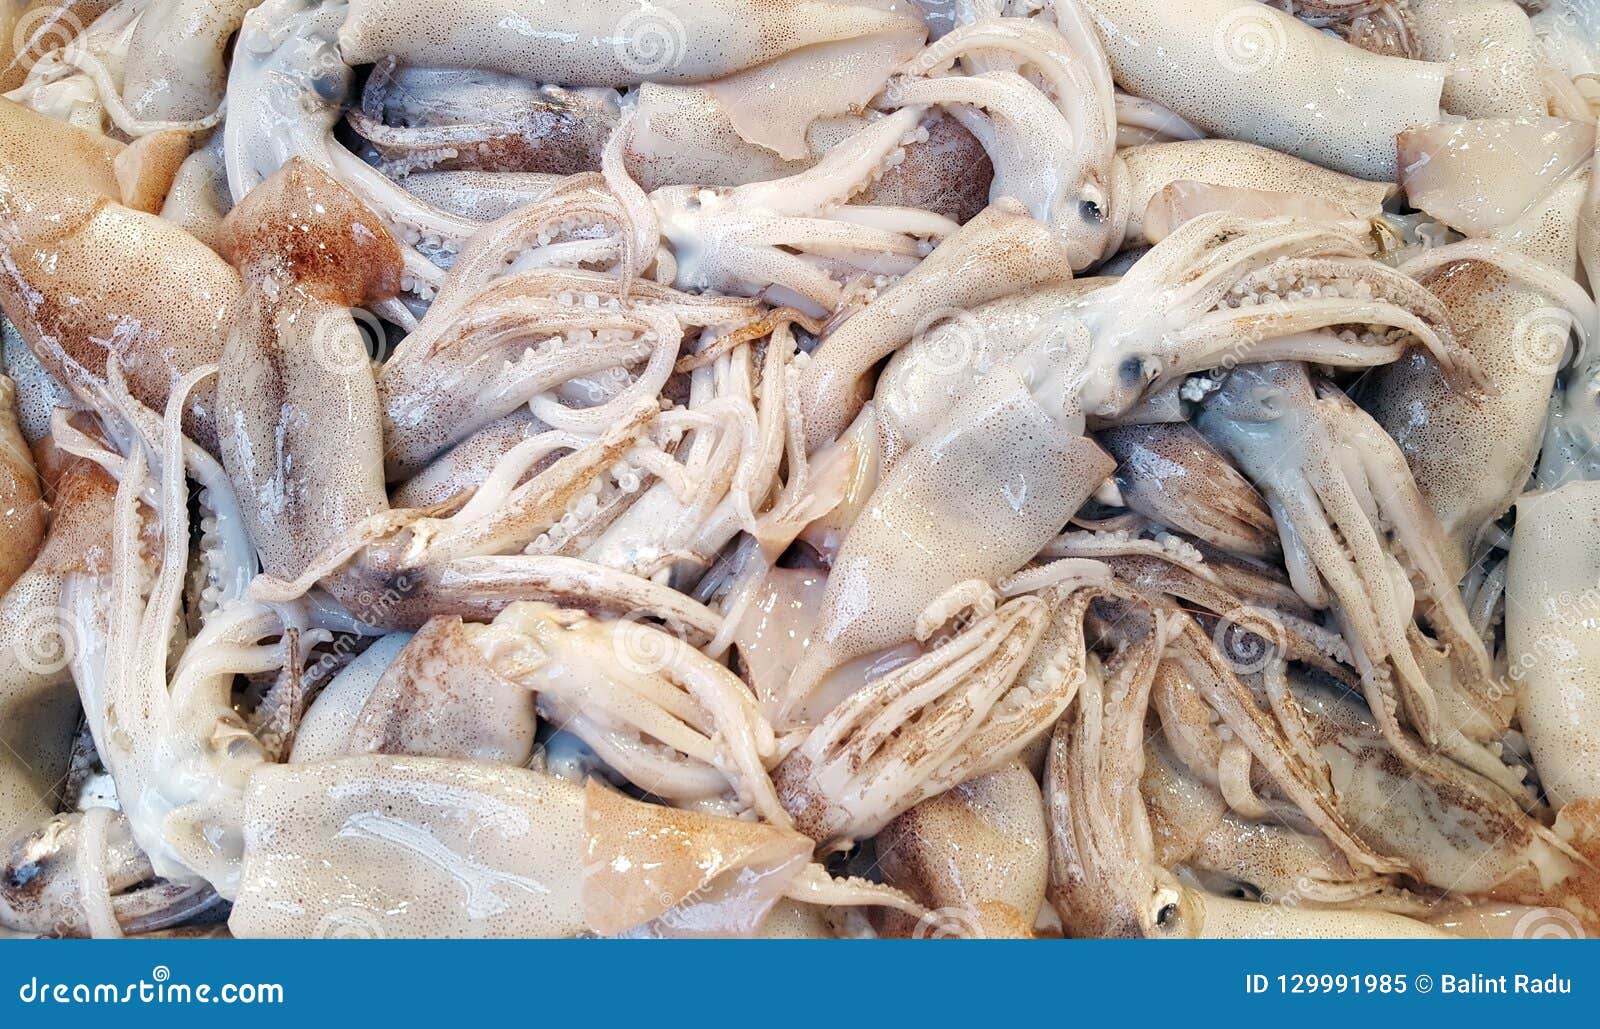 新鲜的Loligo寻常的乌贼海鲜隔绝。 库存照片. 图片 包括有 触手, 空白, 敌意, 食物, 少许, 捕鱼 - 39910856